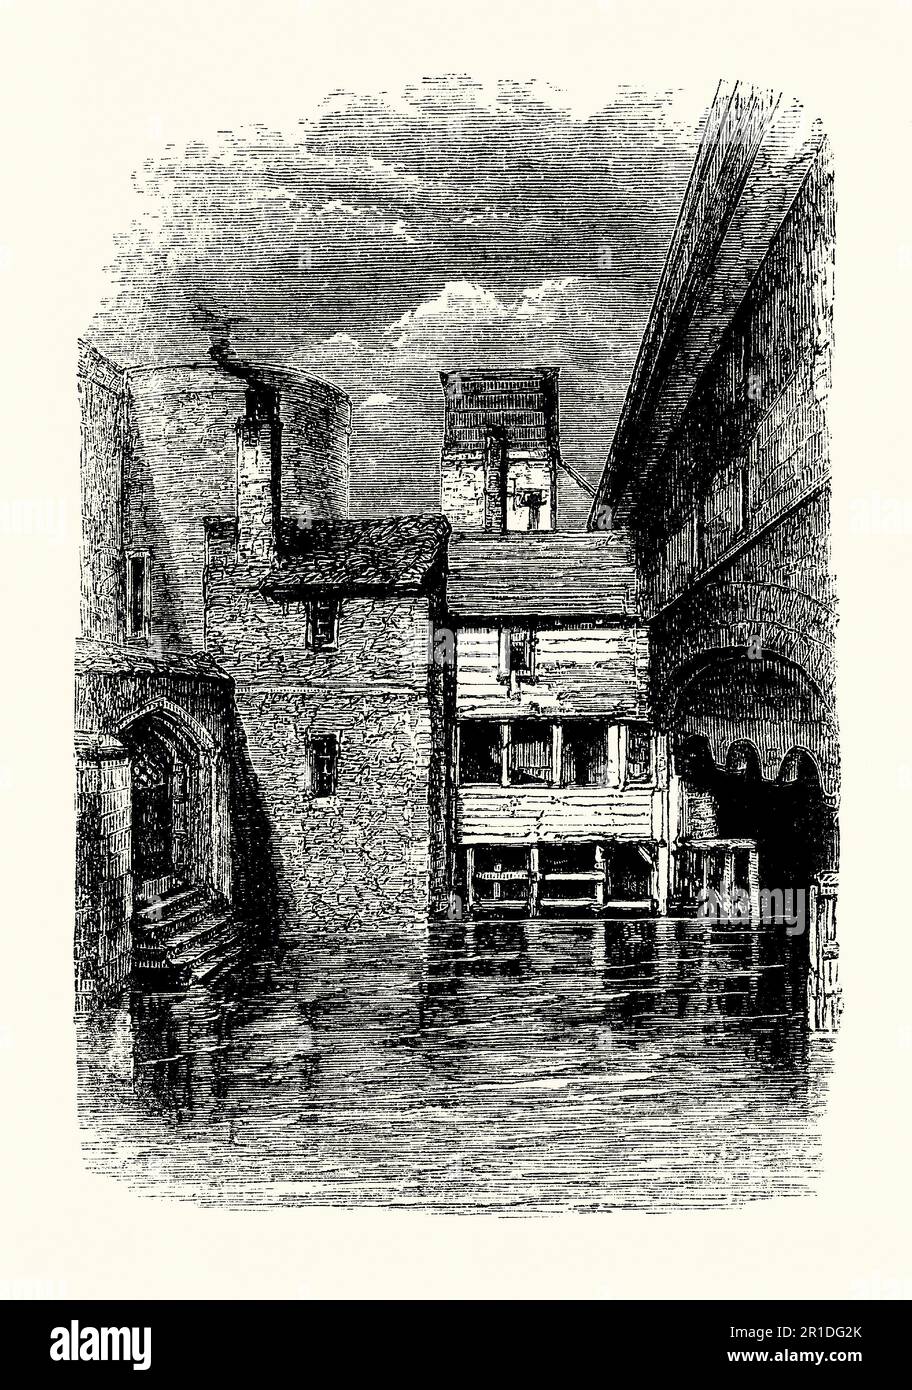 Eine alte Gravur des Verrätertors Gate, The Tower of London, London, England, UK c. 1550. Der Tower wurde Ende 1066 im Rahmen der normannischen Eroberung von England gegründet. Es war eine königliche Residenz. Das Verrätertor ist ein Eingang, durch den viele Häftlinge der Tudors am Tower of London (hier auf der rechten Seite) eintrafen. Das Tor wurde von Edward I gebaut, um einen Bootseingang zum St. Thomas' Tower (links) zu bieten, der zusätzliche Unterkünfte für die königliche Familie bereitstellte. Gefangene wurden mit einem Schiff entlang der Themse gebracht. Stockfoto